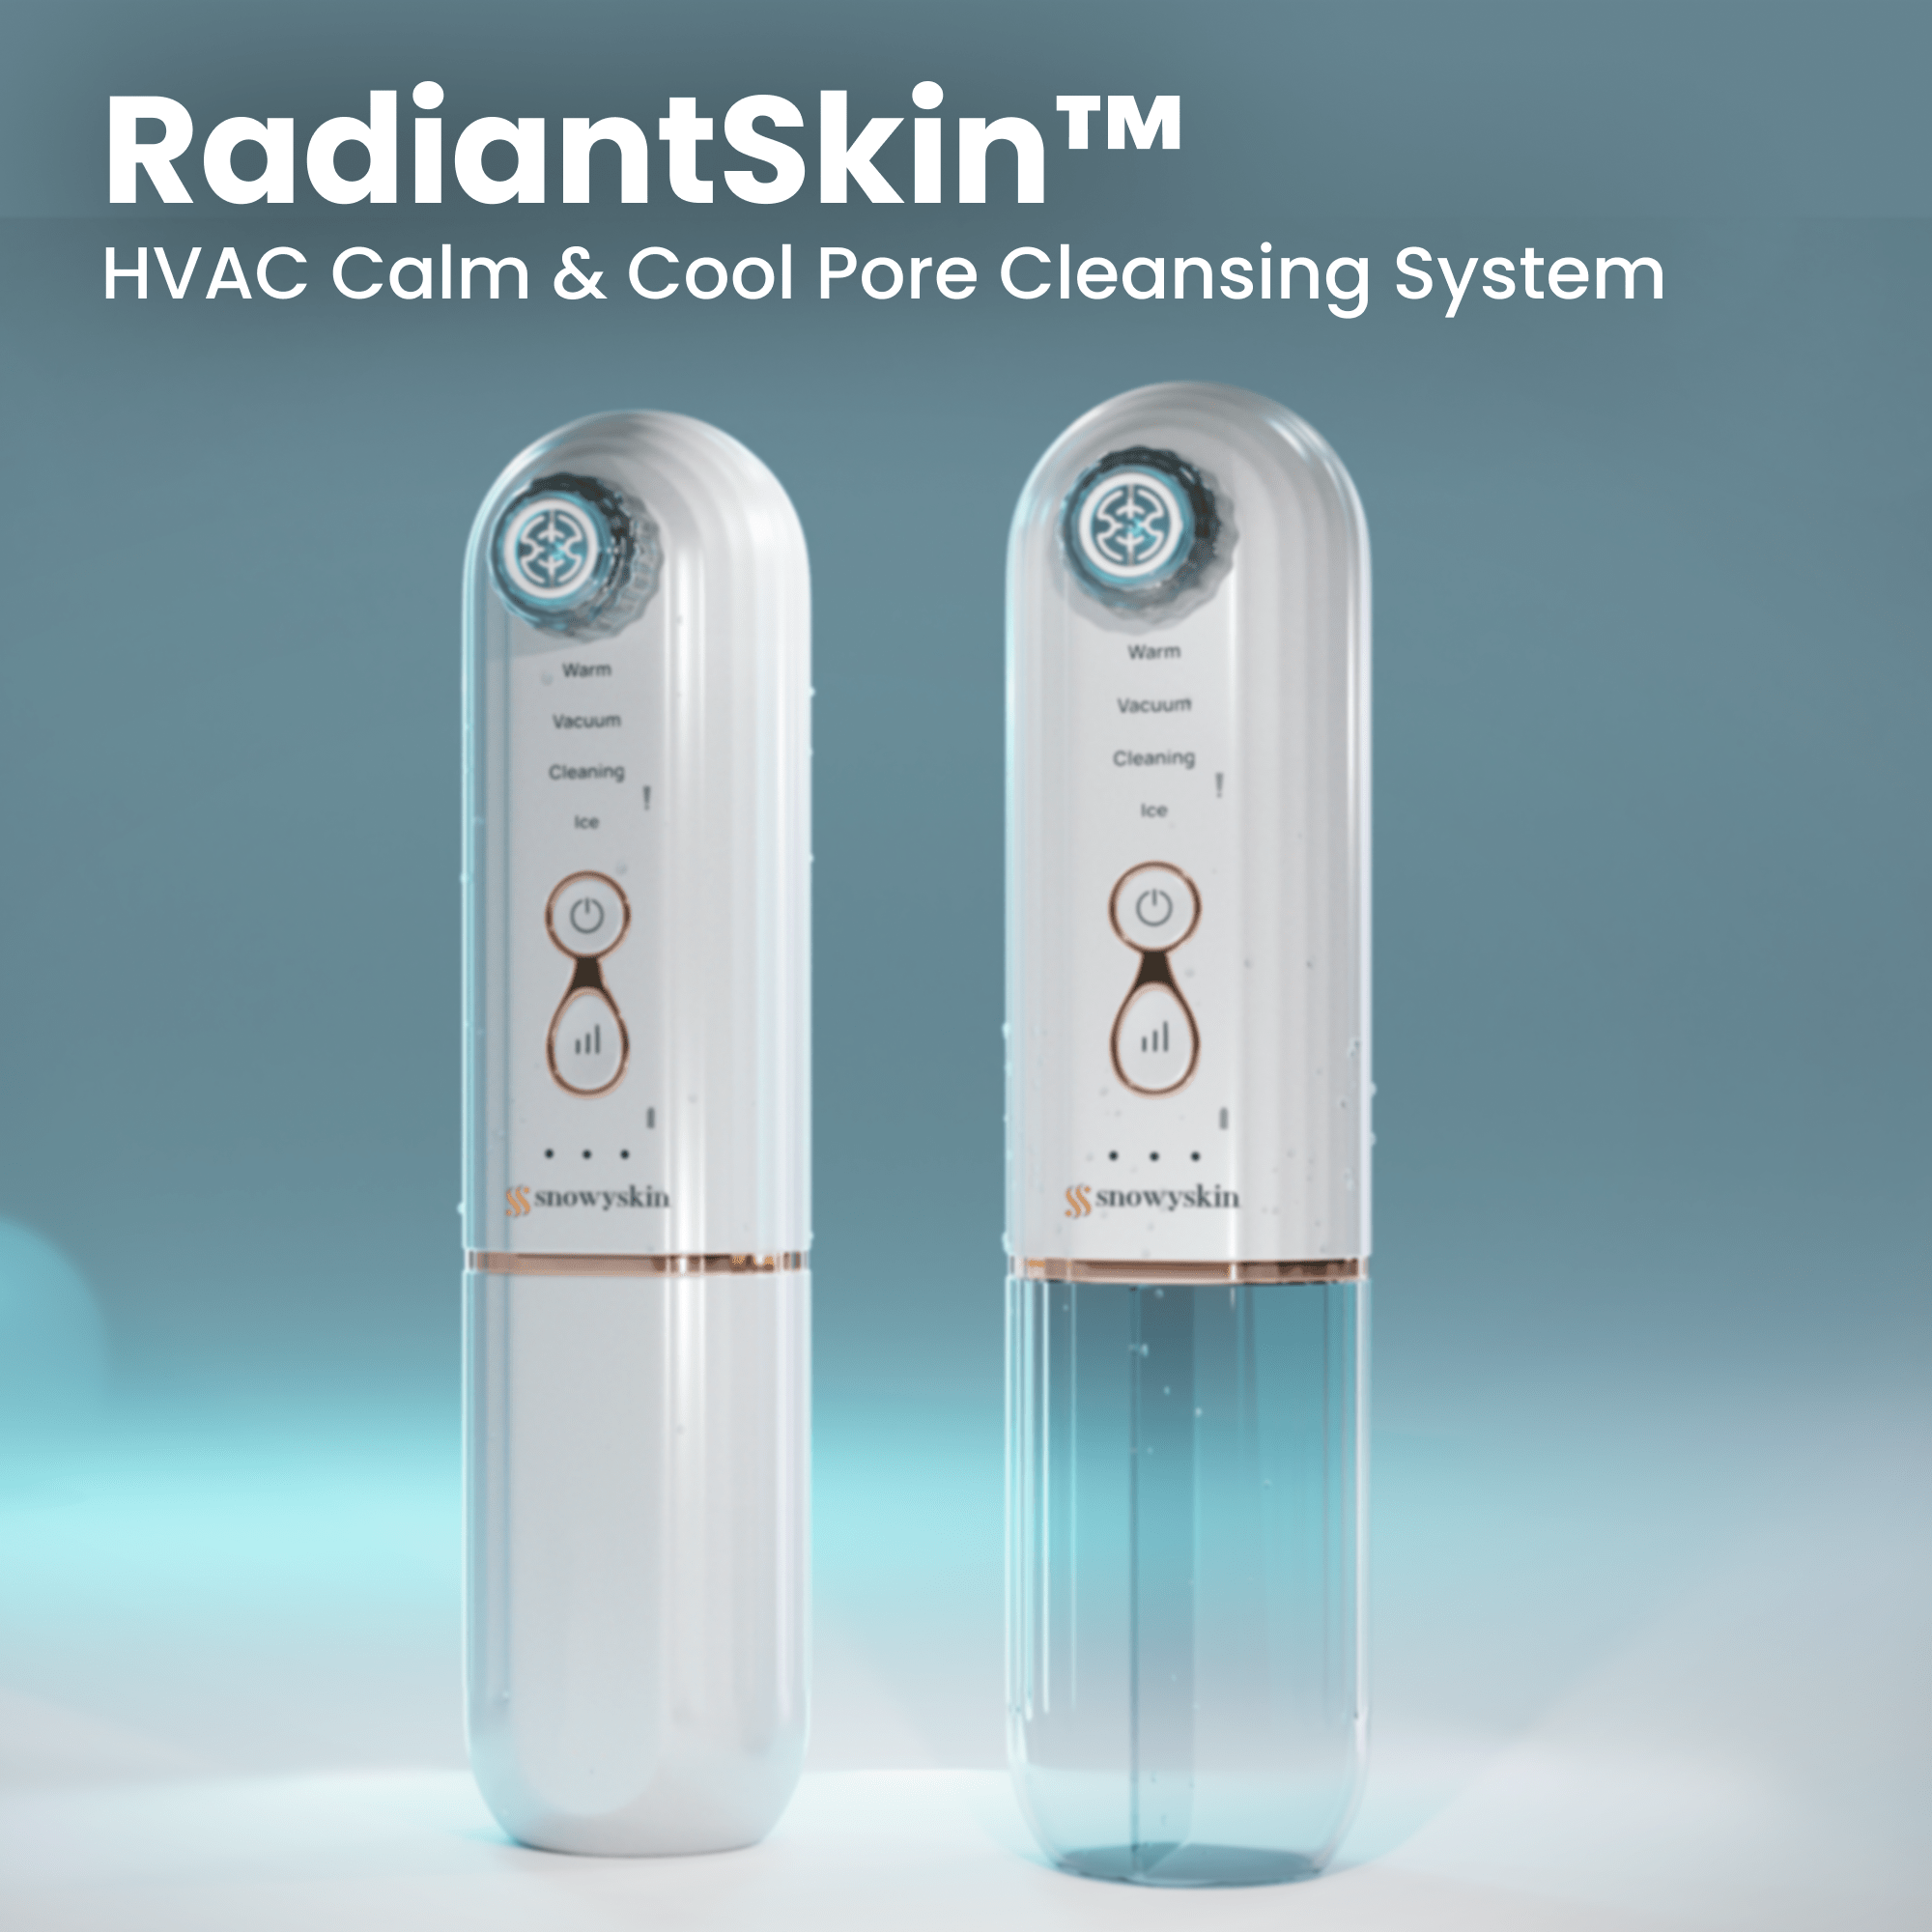 RadiantSkin Pore Cleansing System